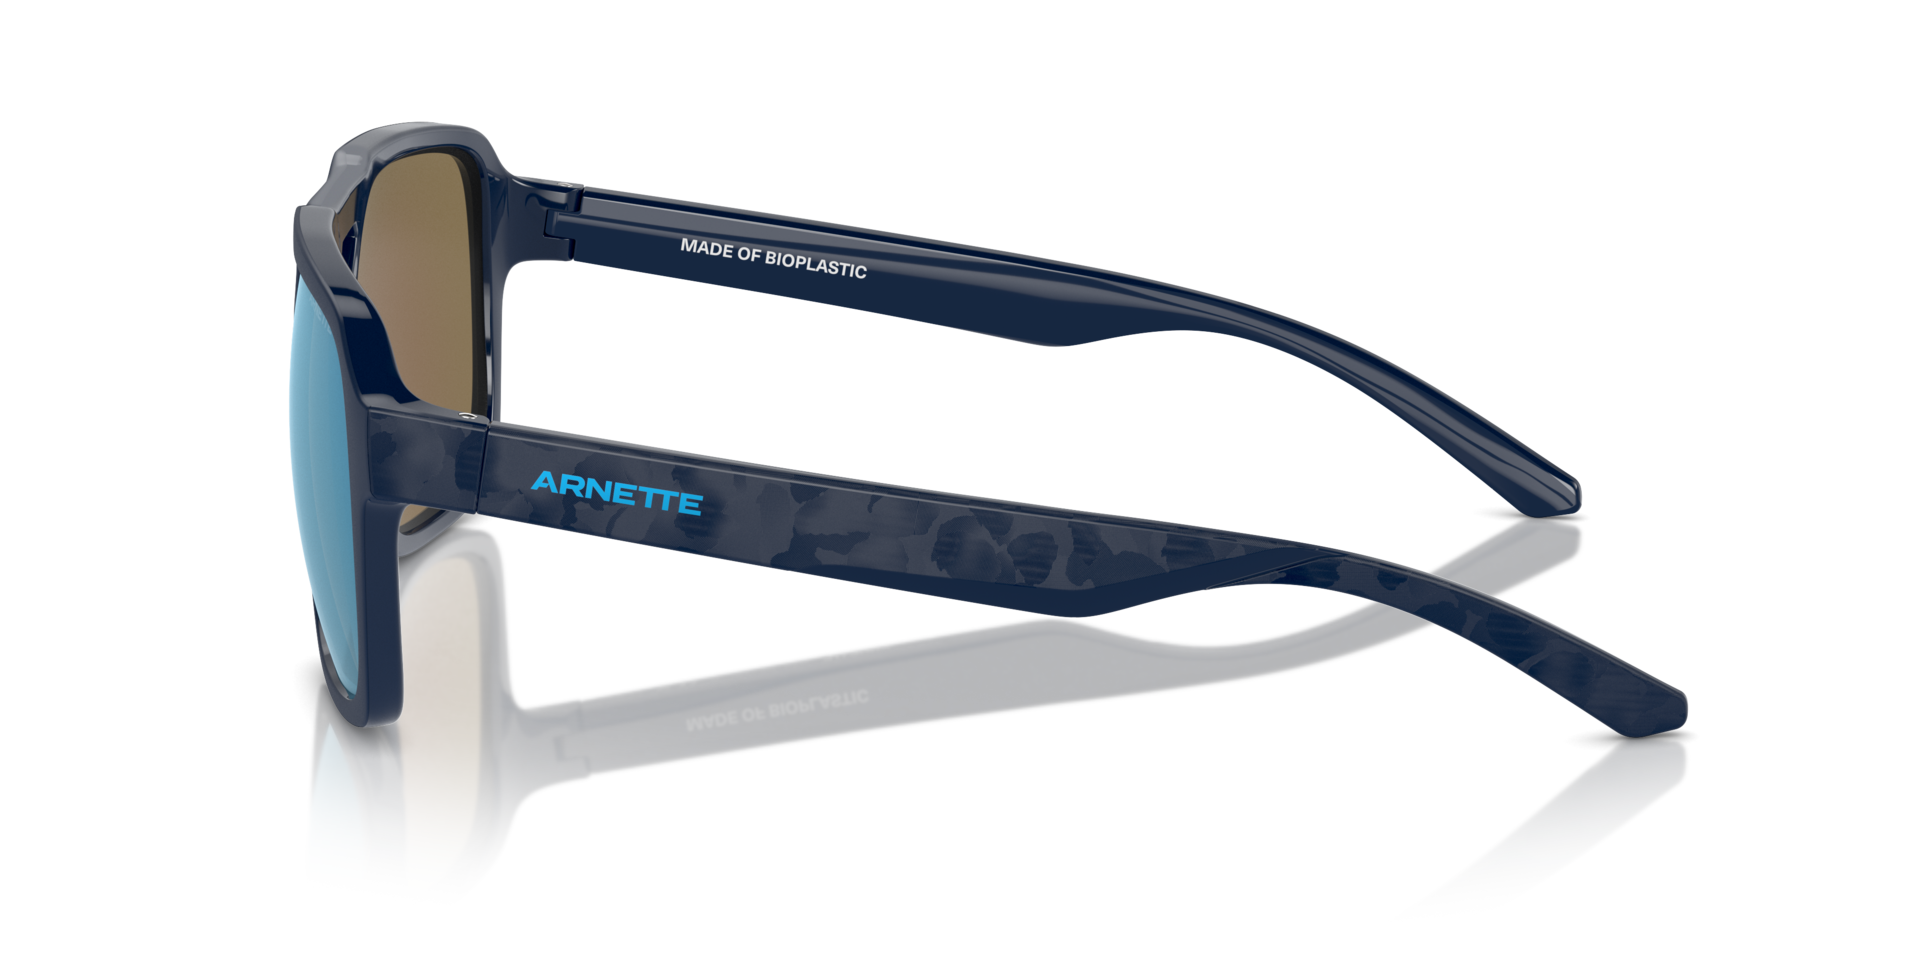 Das Bild zeigt die Sonnenbrille AN4339 275422 von der Marke Arnette in schwarz.